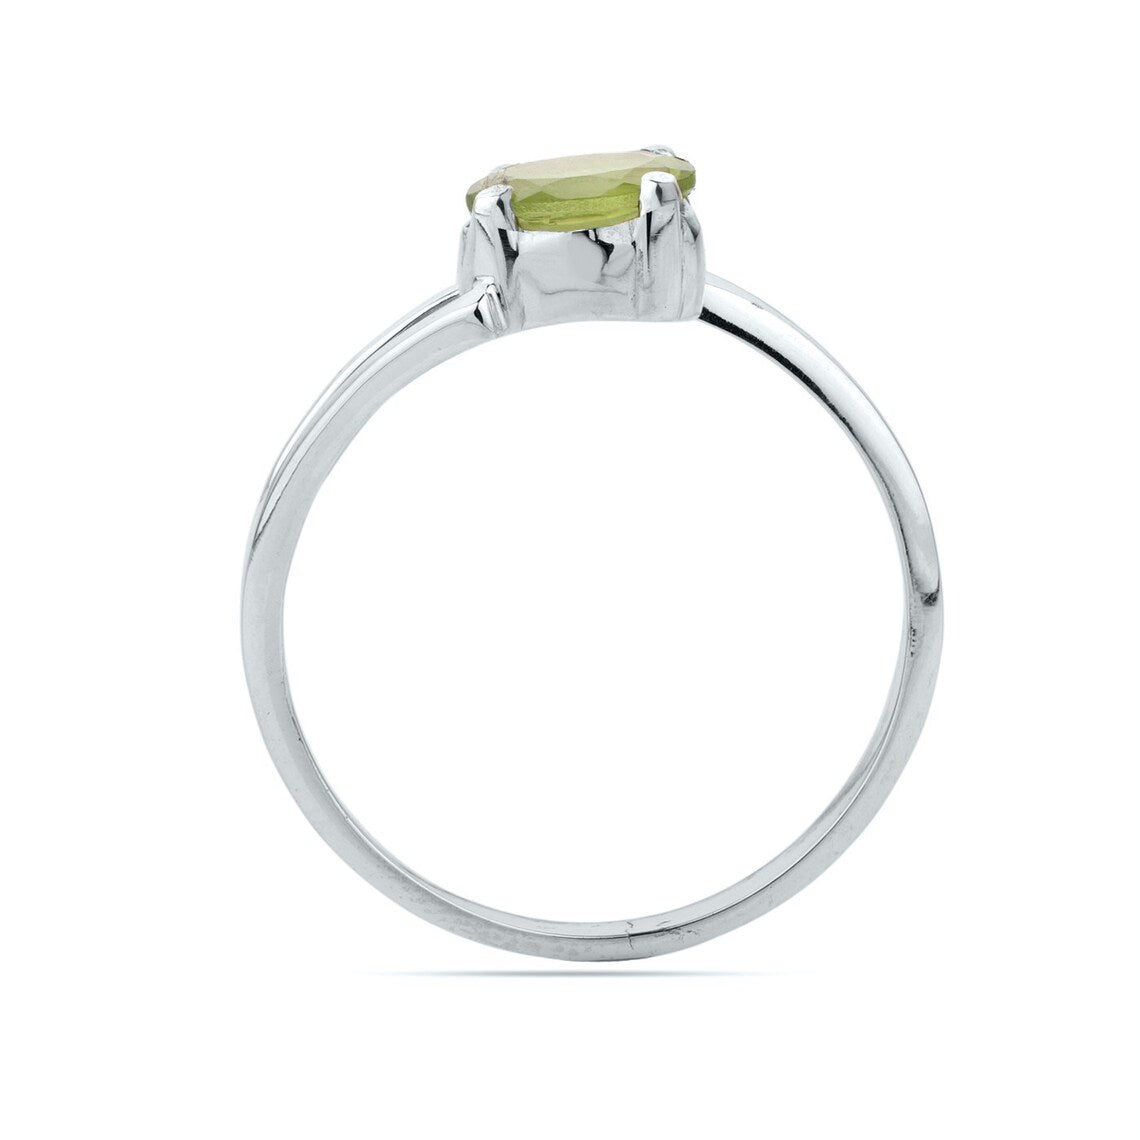 Natural Peridot Ring Oval Peridot Ring Peridot Gemstone Ring